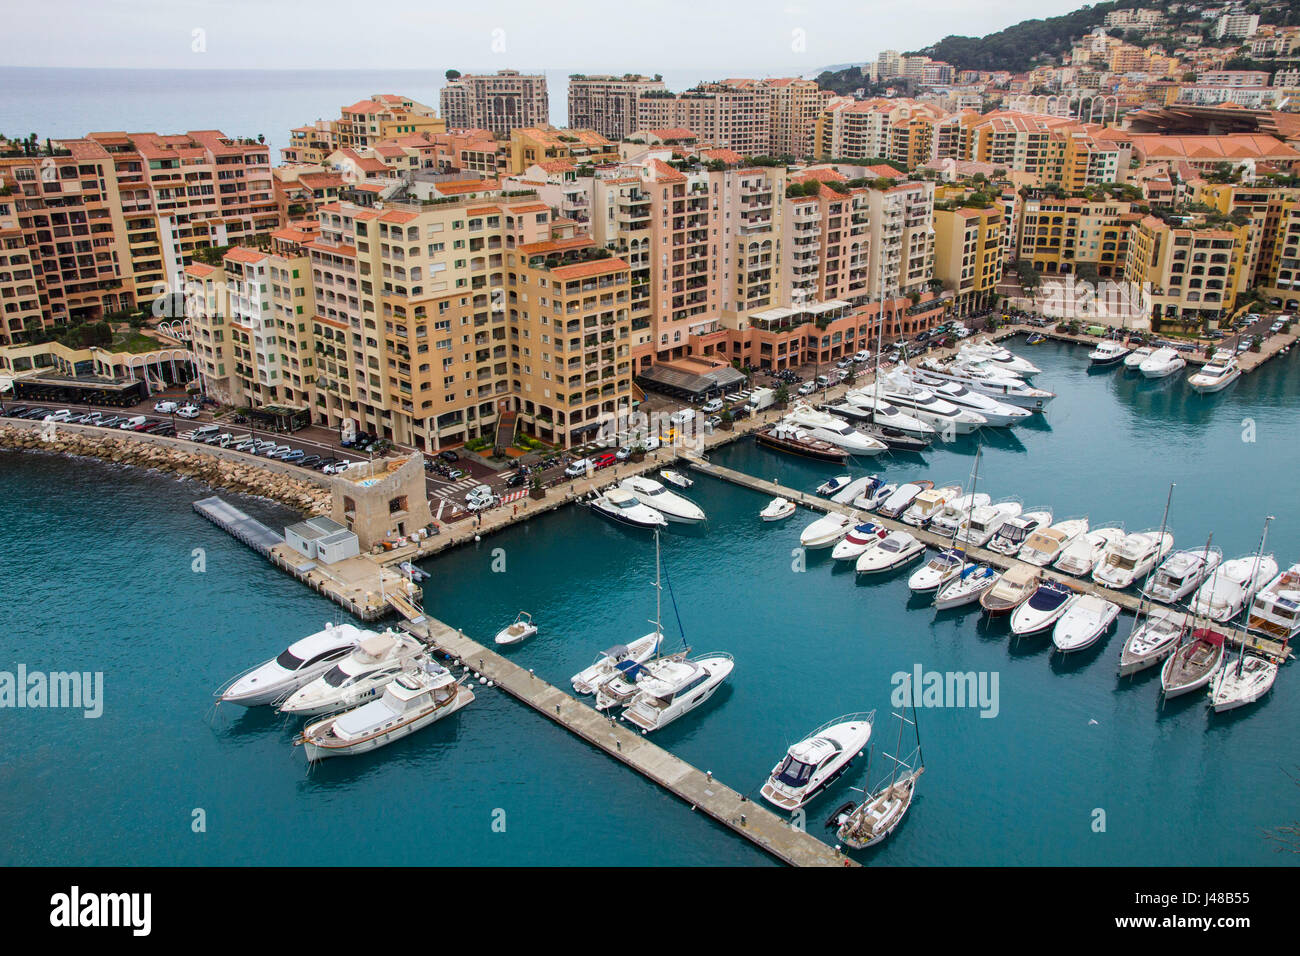 Fontvieille es un distrito de la ciudad de Montecarlo, desarrollado en los años setenta y ochenta en las tierras ganadas al mar frente de Le Rocher (la roca). Monte Carlo, Monaco. Foto de stock